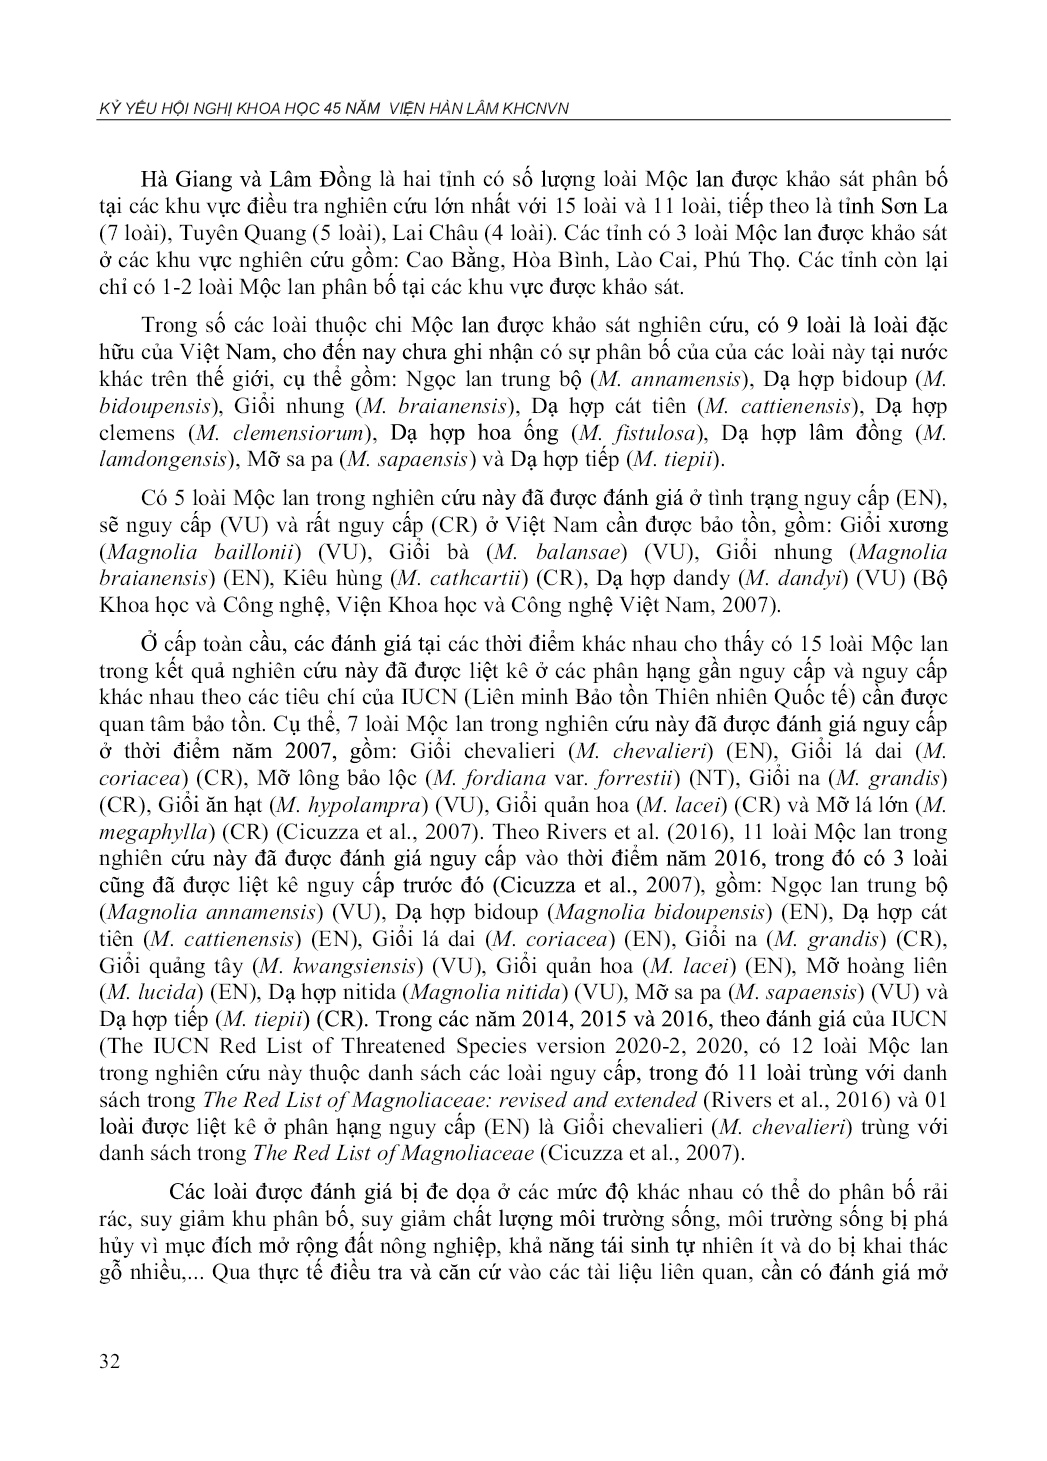 Hiện trạng phân bố và giá trị sử dụng của một số loài mộc lan (Magnolia L.) tại Việt Nam trang 9